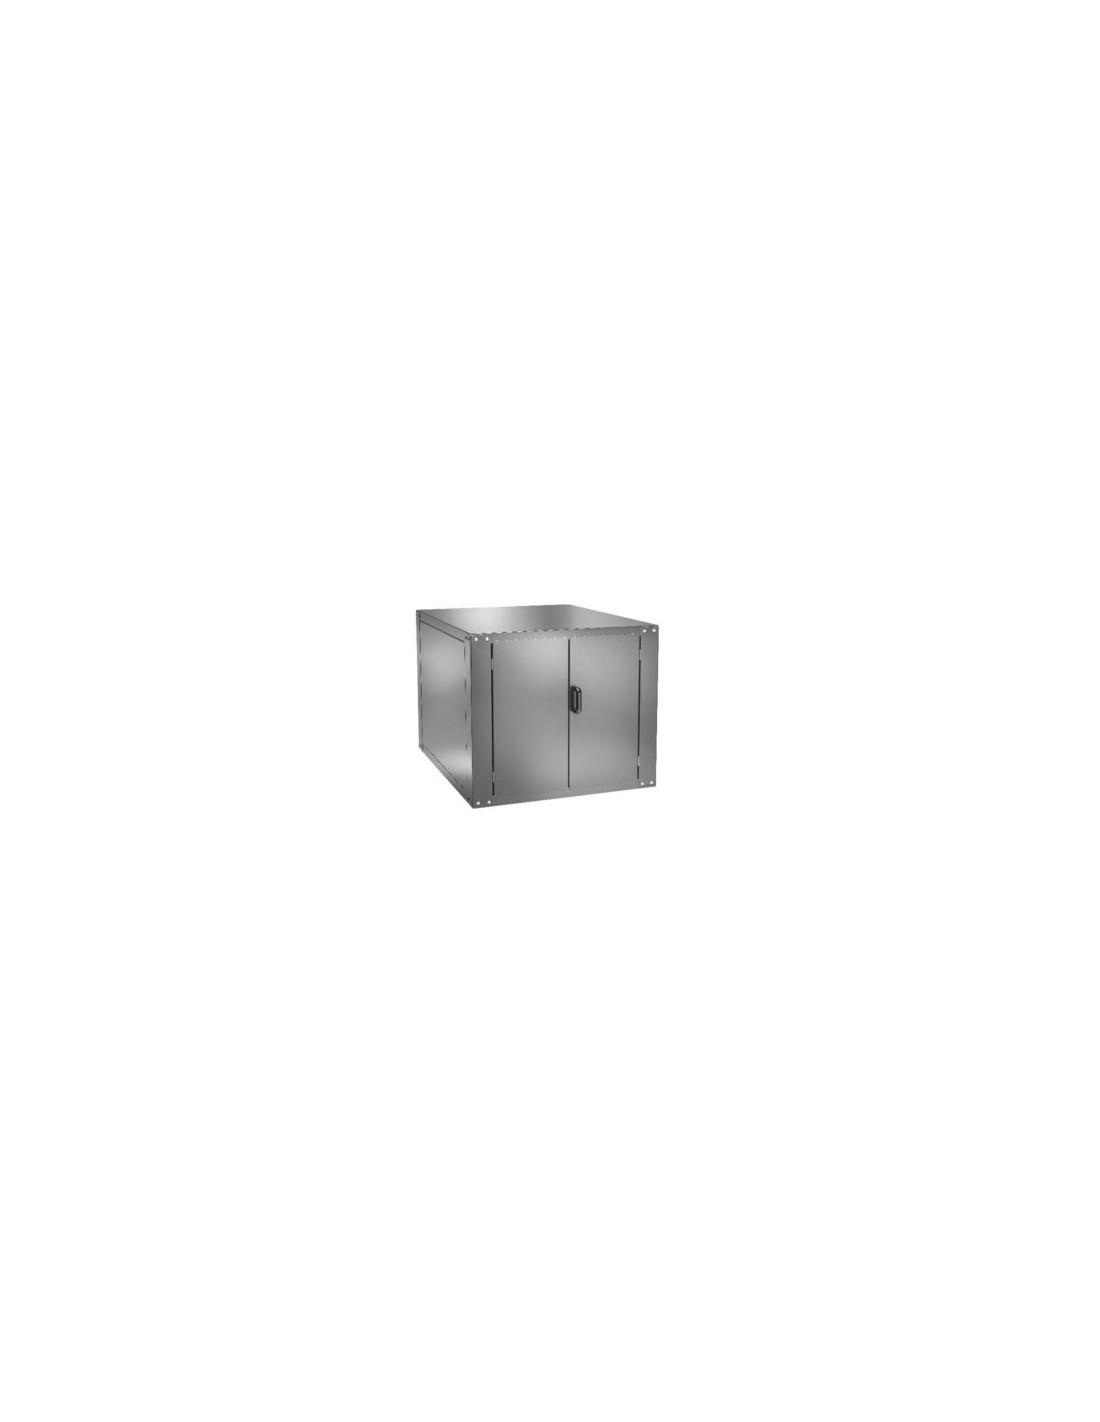 Cella lievitazione per forno - Mod. CLFMEW6+6 - Capacità  teglie n.9 senz ruote - n.7 con ruote - Temperatura 0÷90°C - Dimension